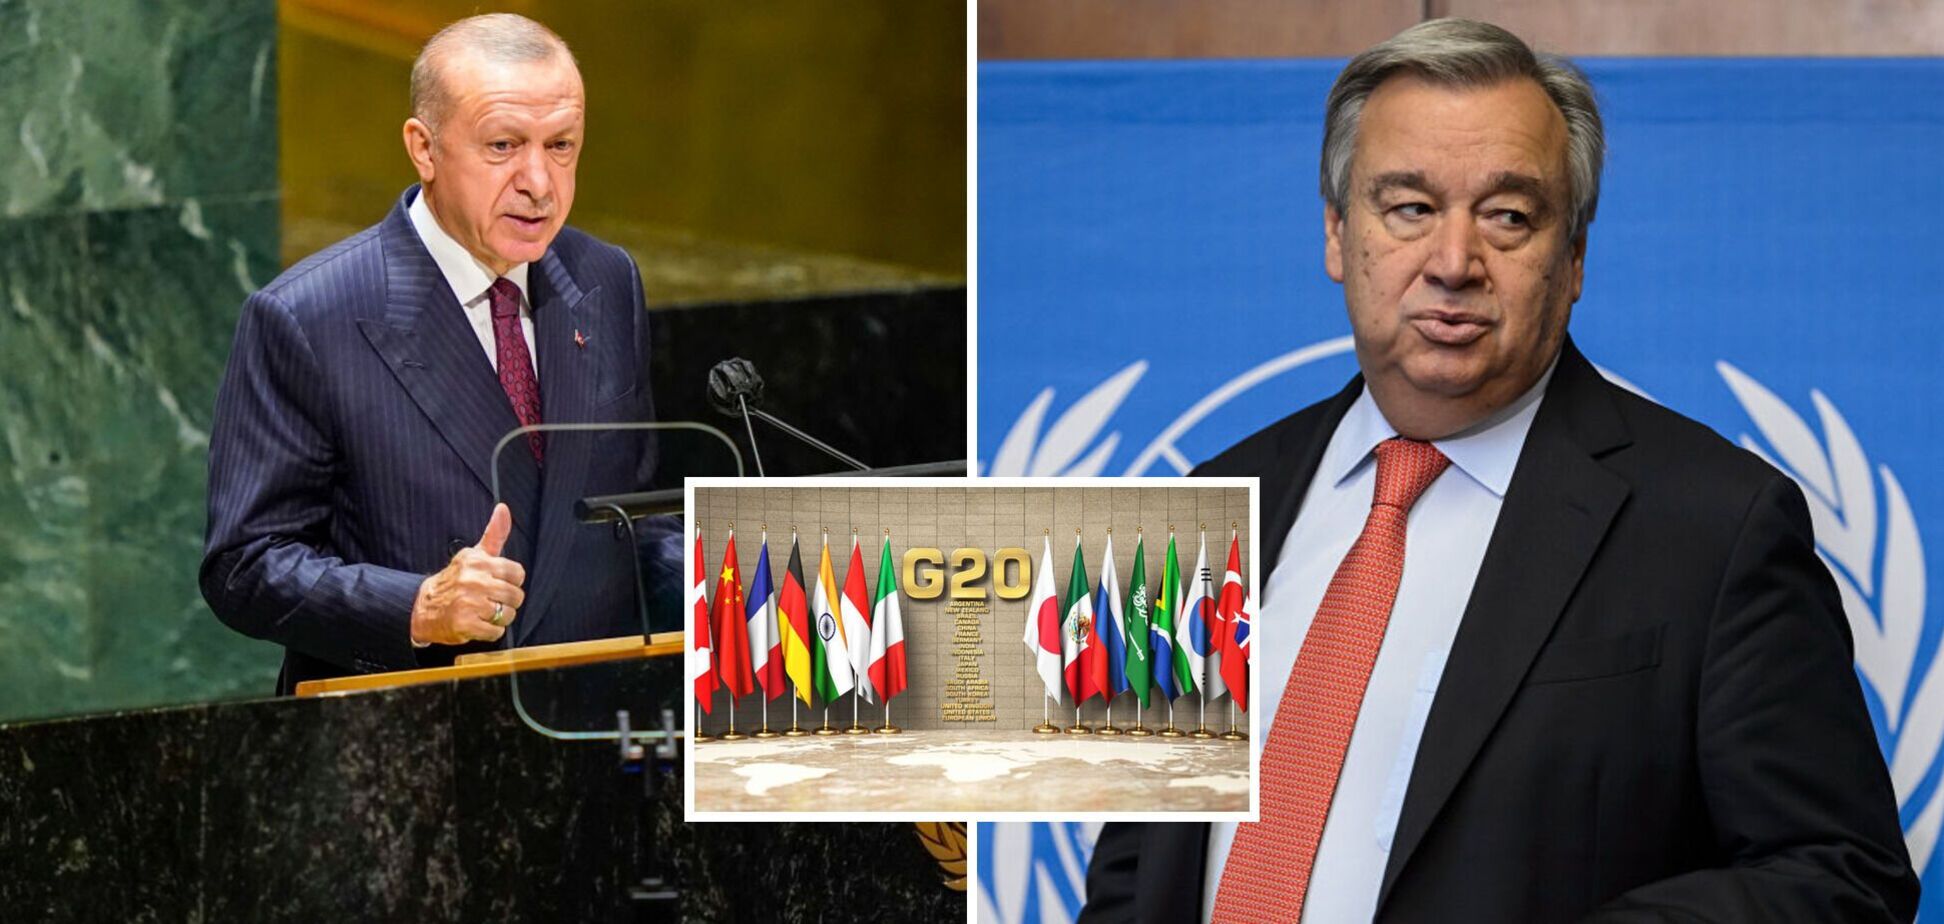 ООН и G20 заговорили с путинским акцентом: как это случилось